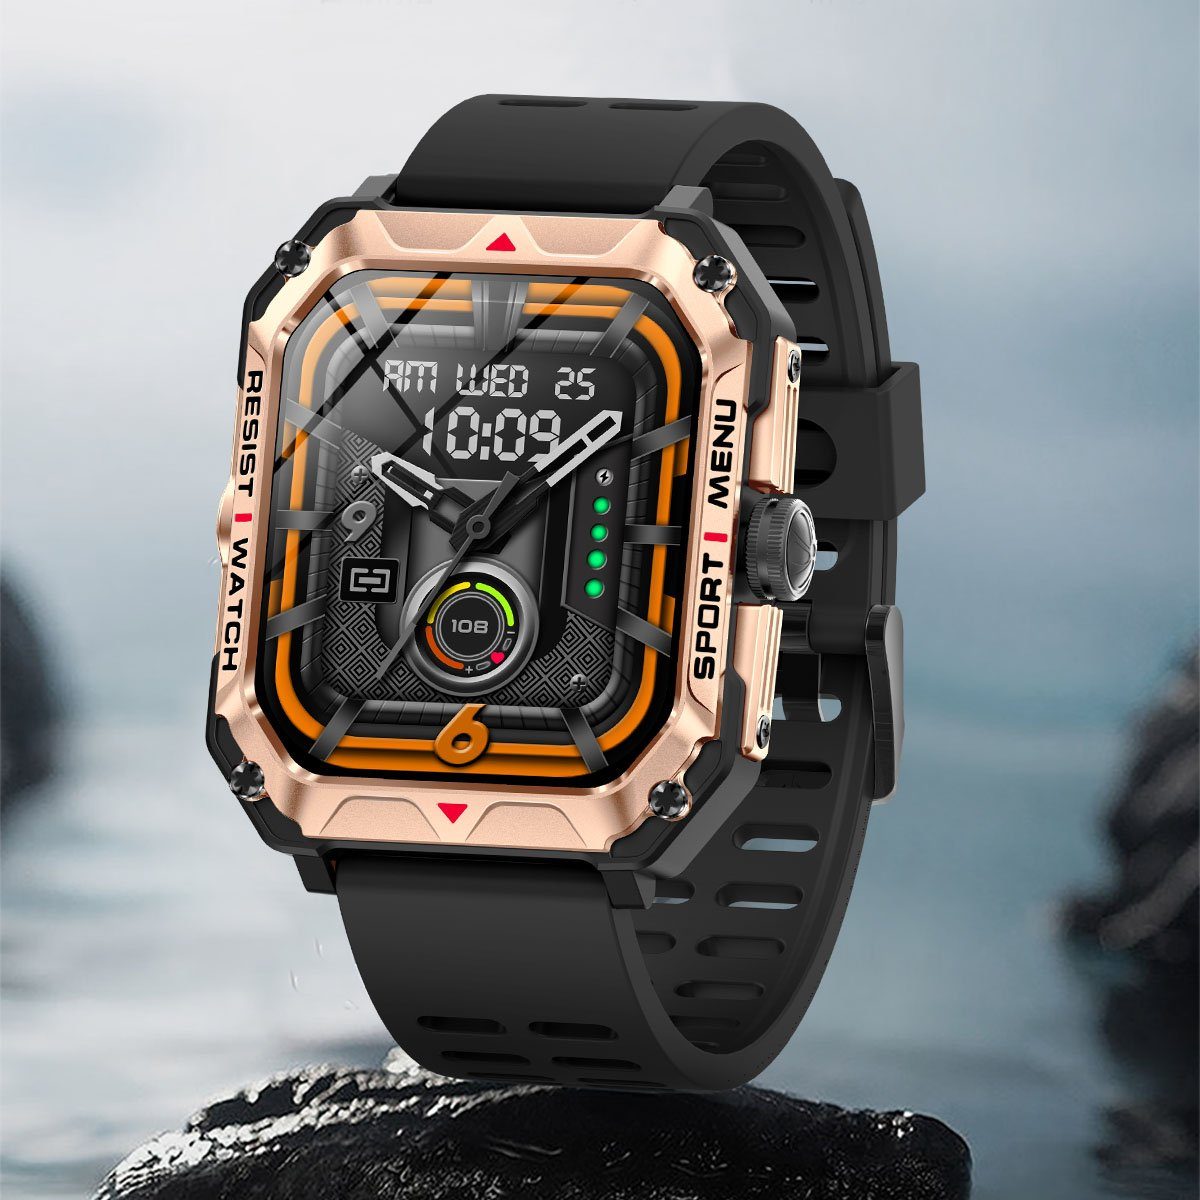 Herren (2.02 Sportuhr Smartwatch 2,02” Outdoor IP68 Touchscreen Schlafmonito Zoll), Fitness Telefonfunktion mit Damen Tracker, Smartwatch Gold Wasserdicht 7Magic